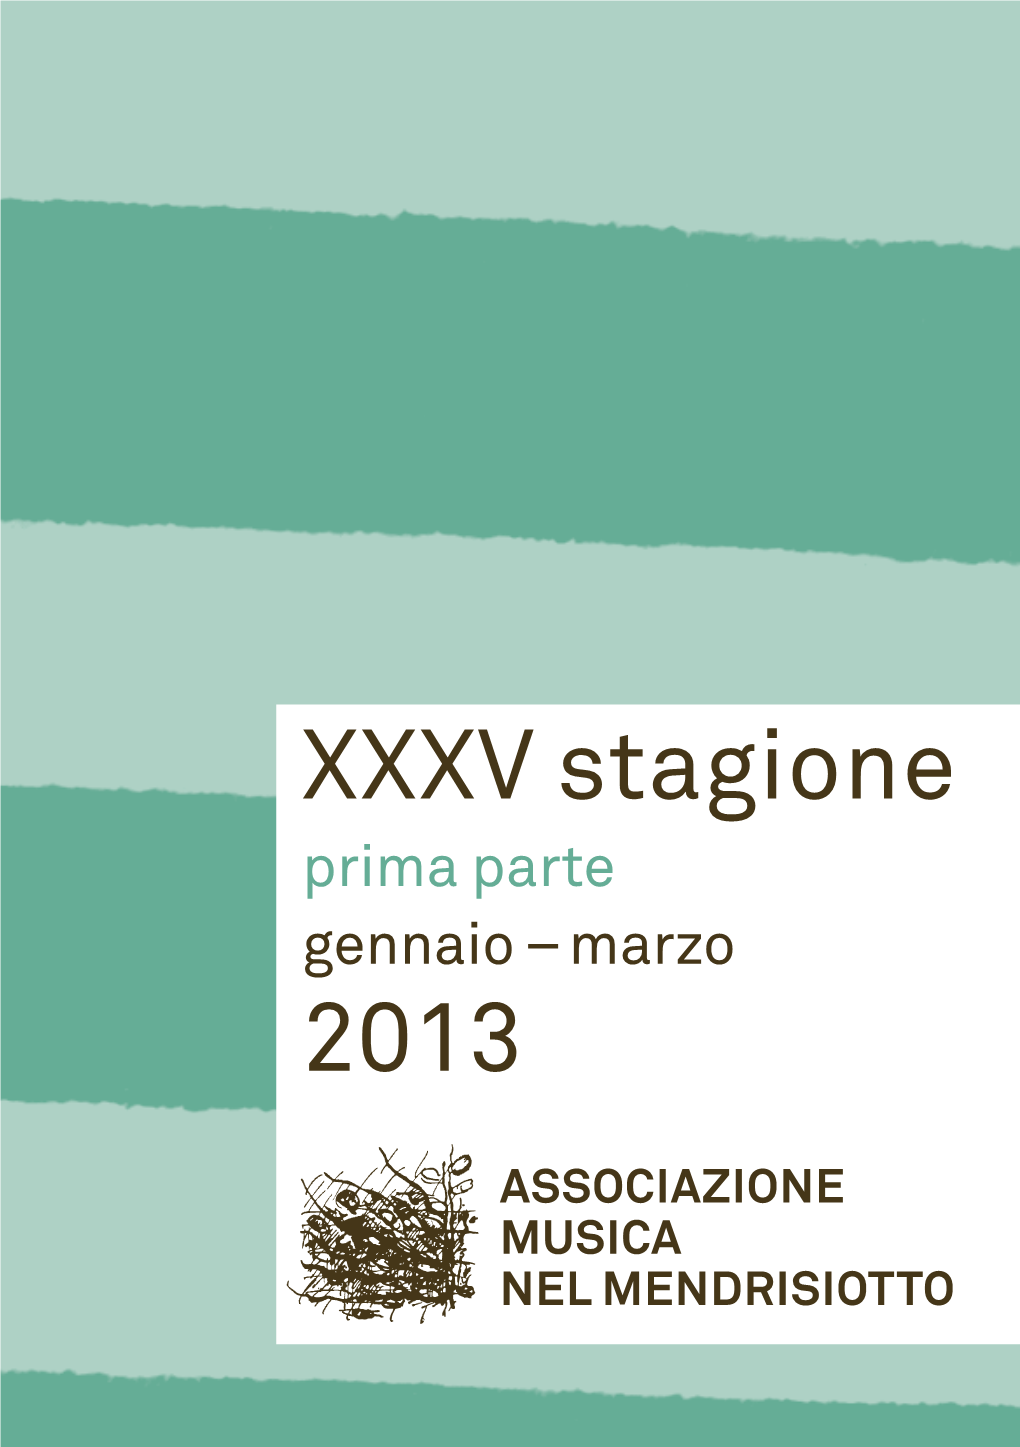 XXXV Stagione 2013